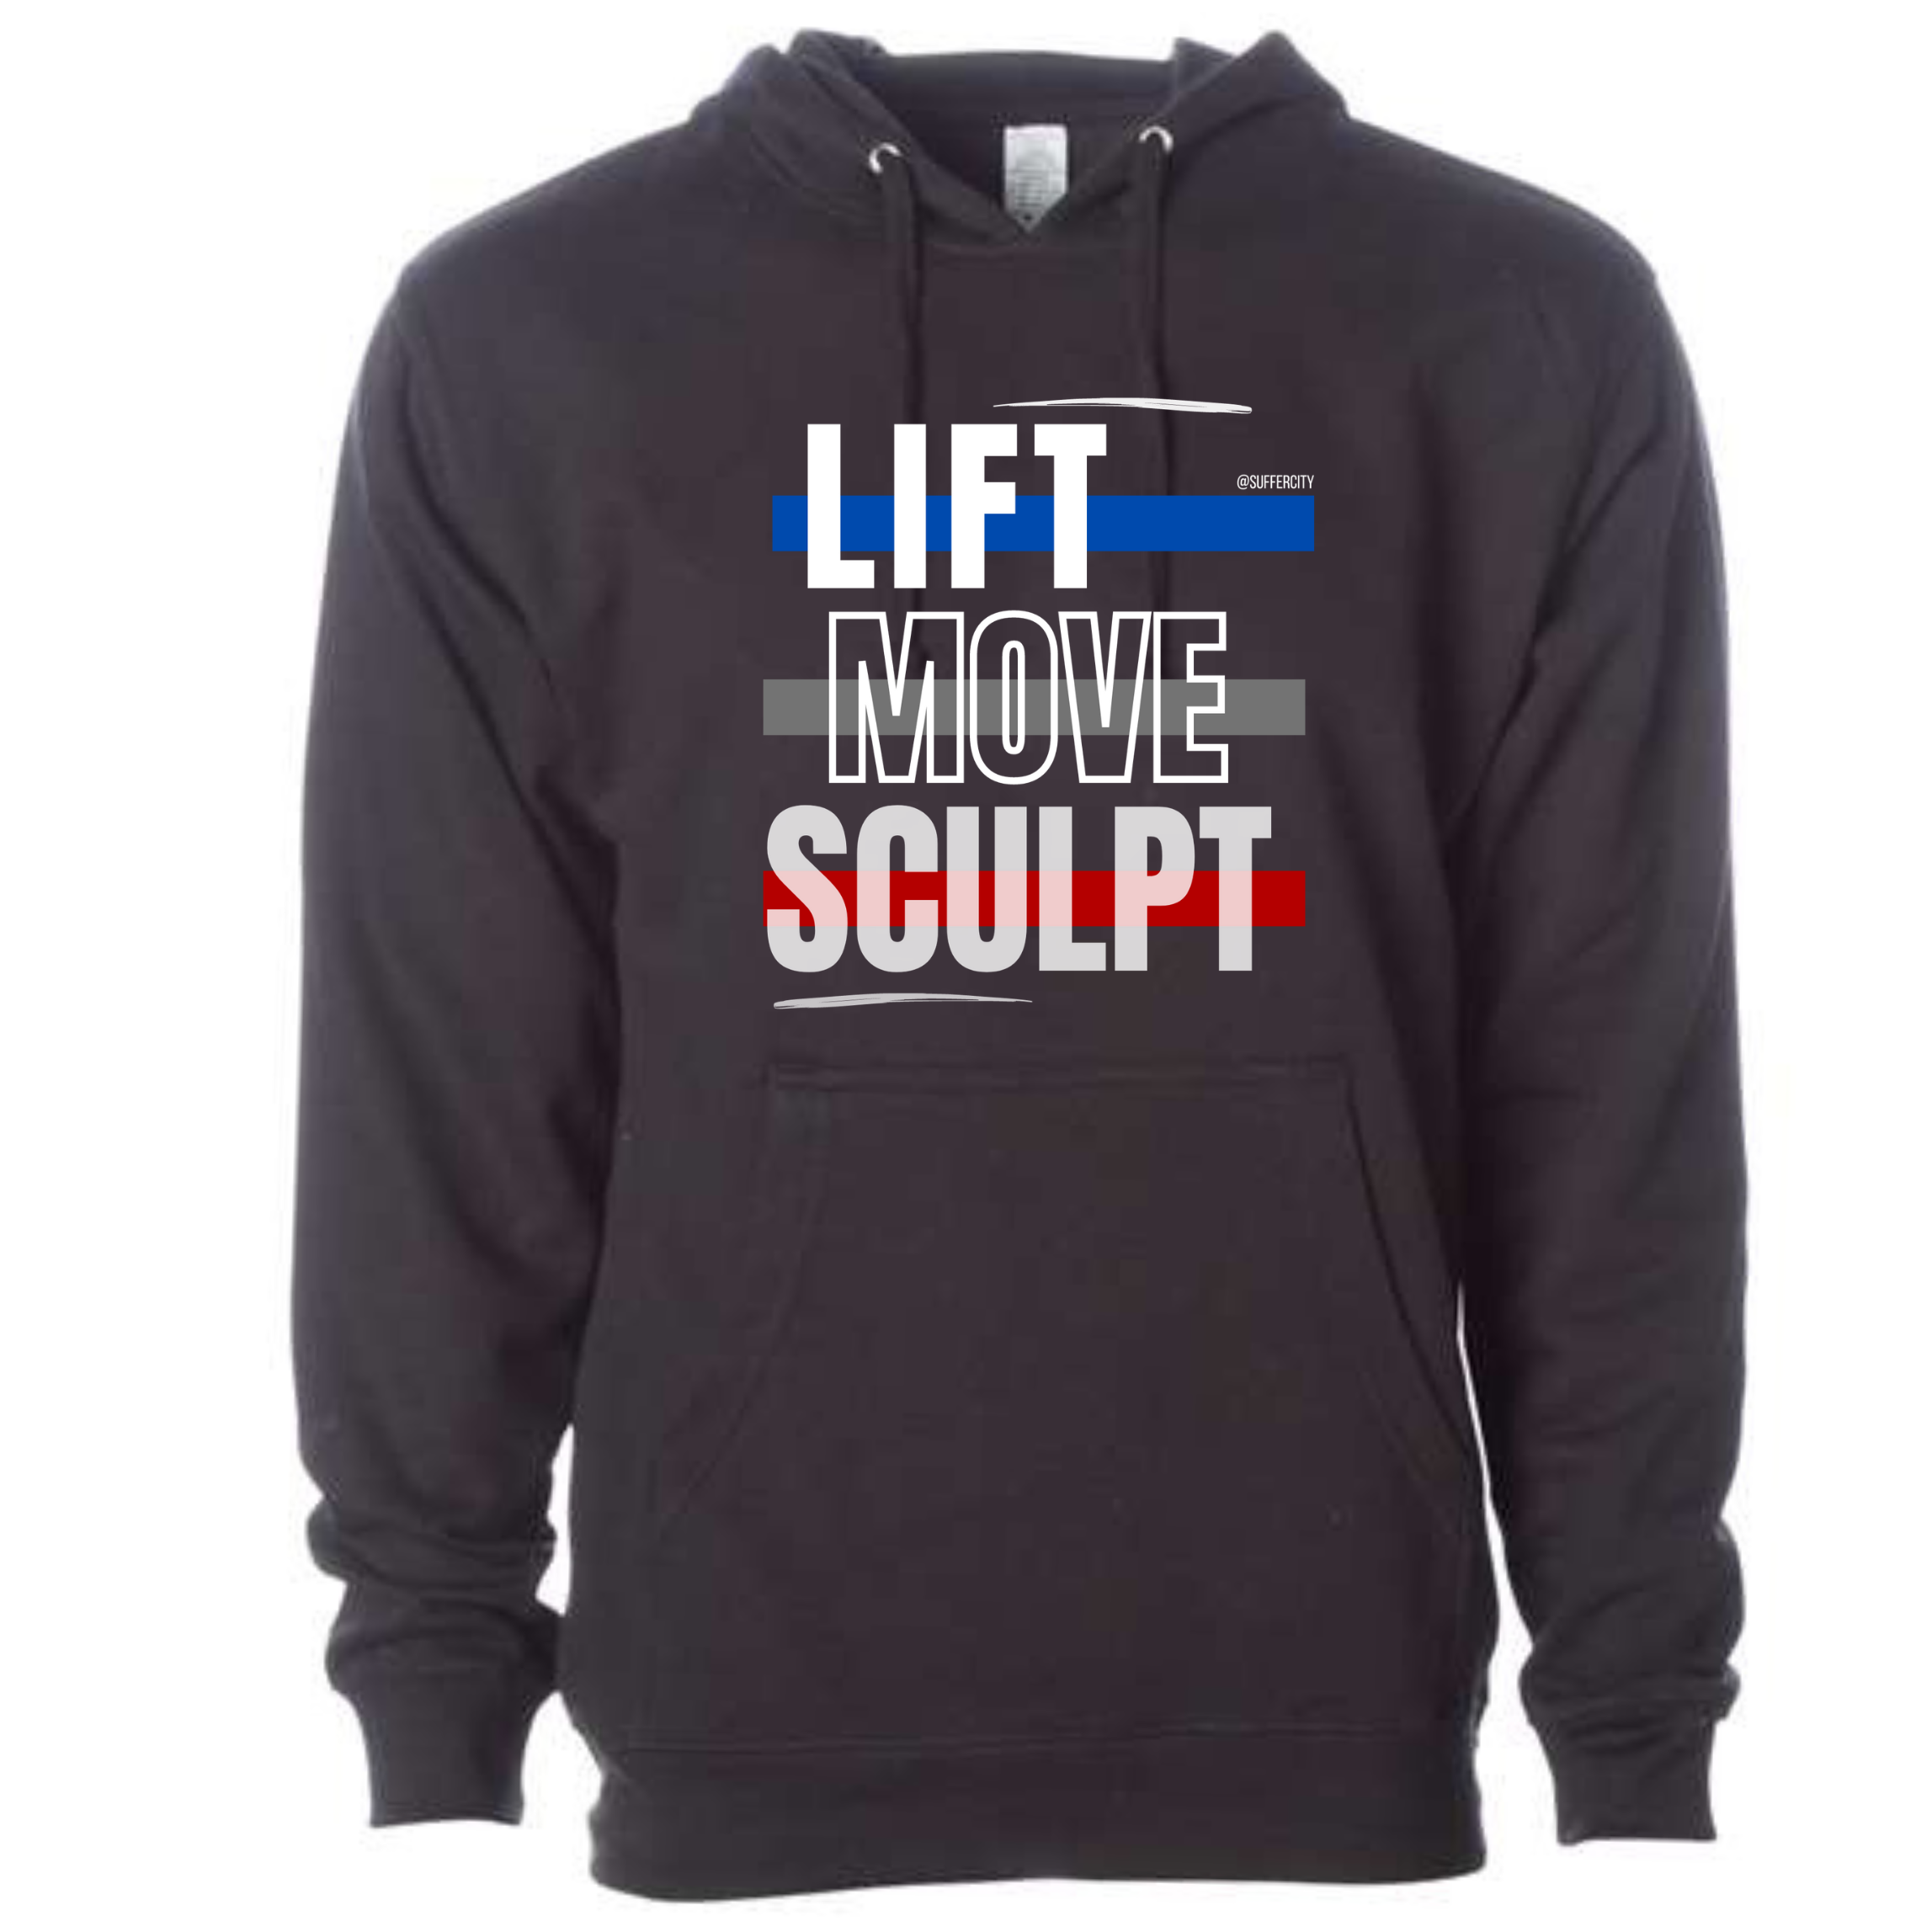 Lift Move Sculpt “Warmer" Options